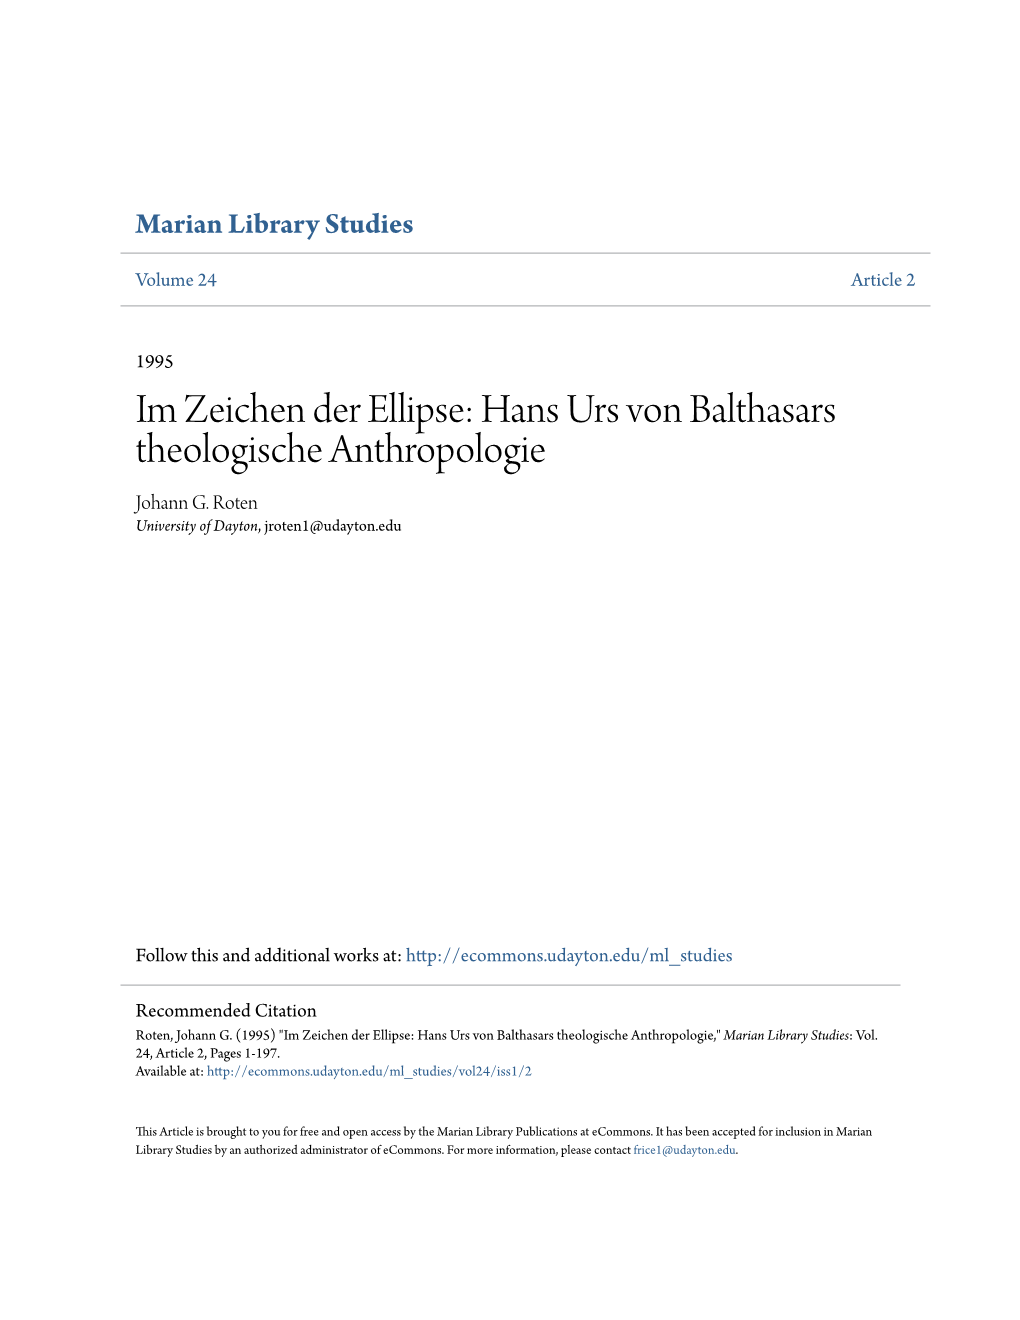 Hans Urs Von Balthasars Theologische Anthropologie Johann G